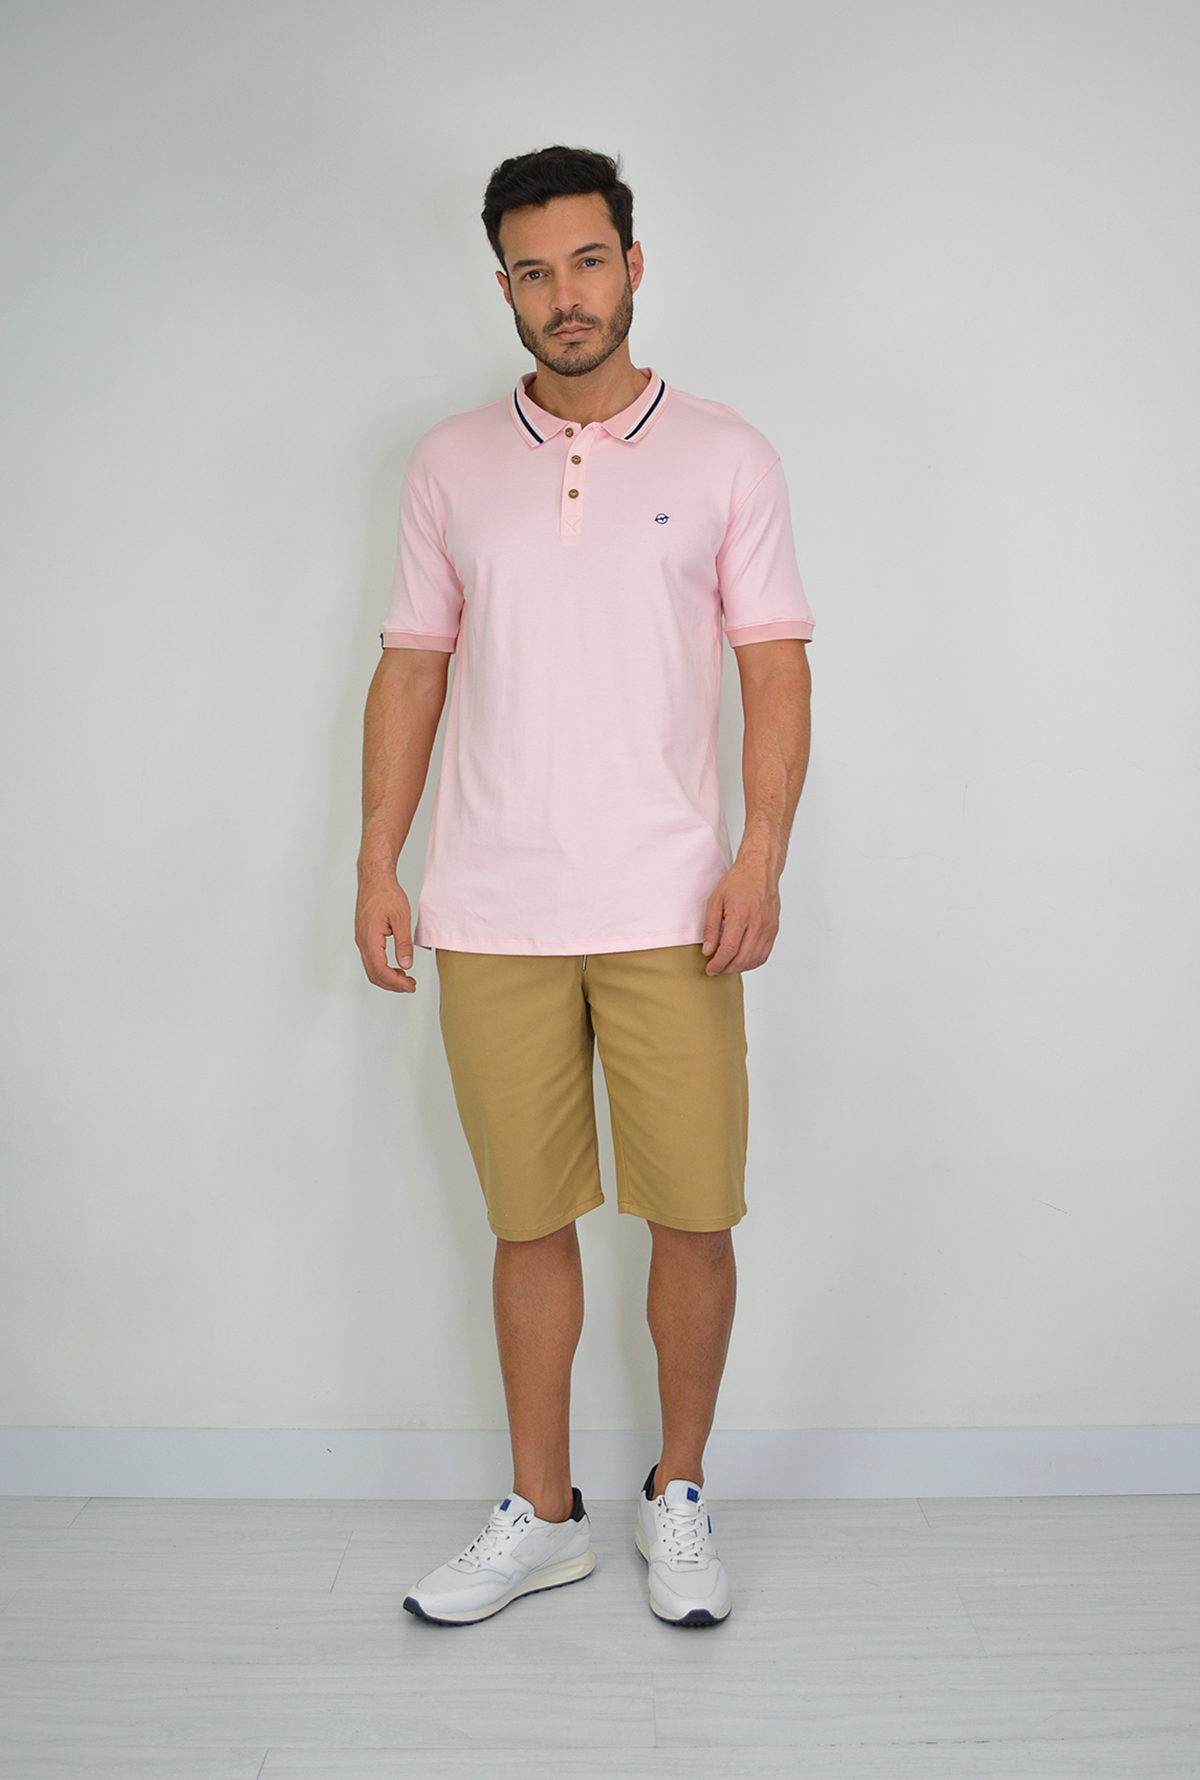 Camiseta Rosada  Tipo Polo Para Hombre DMM05